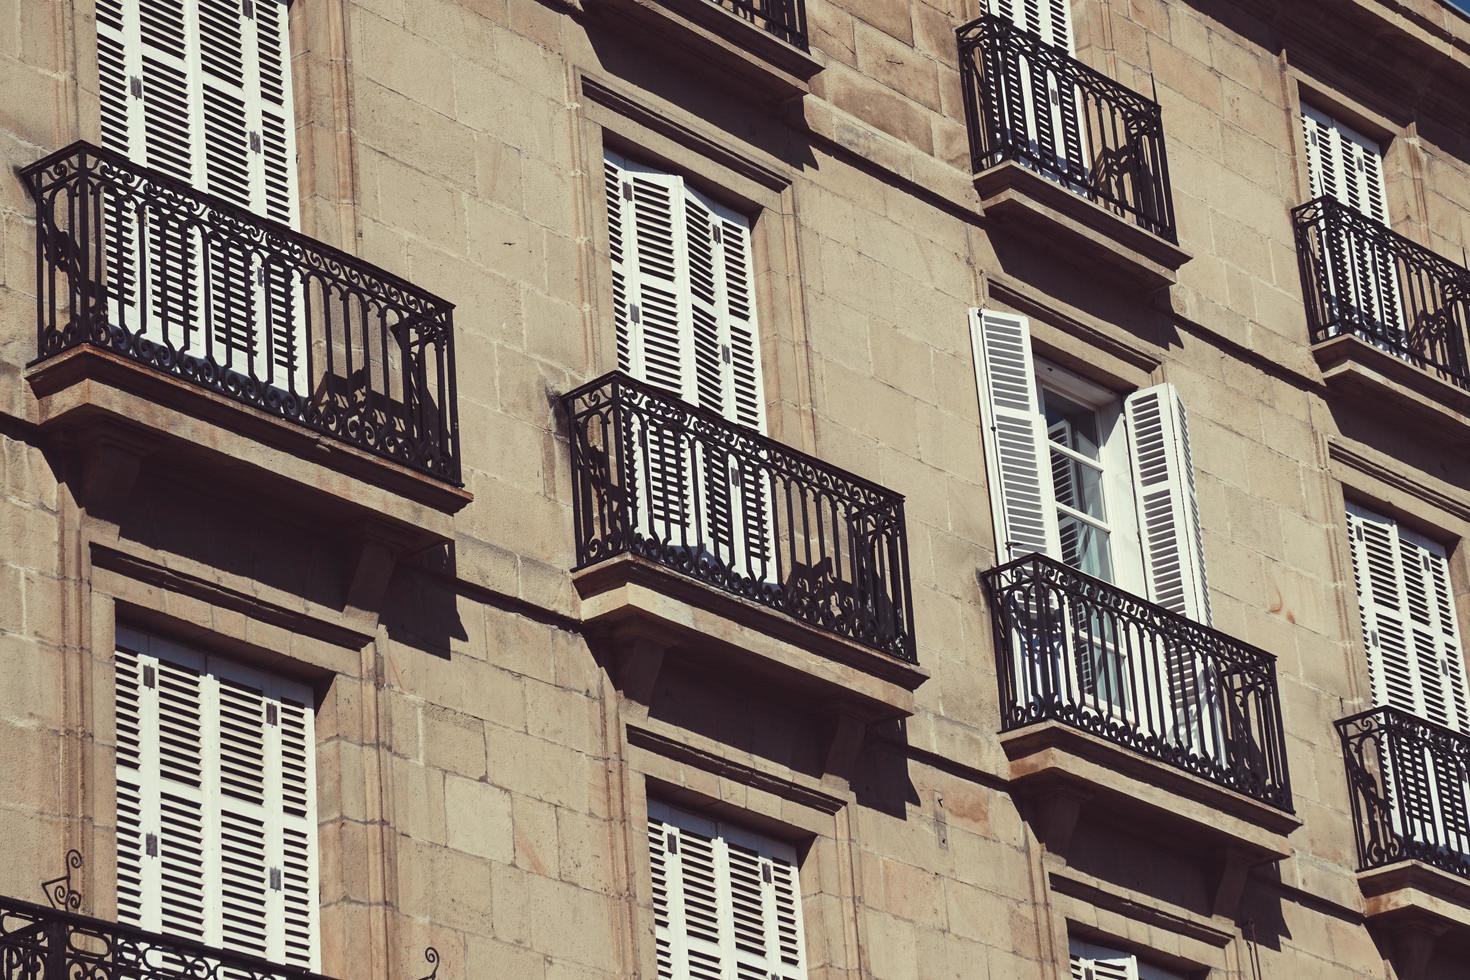 Balcon sur la façade de la maison, l'architecture dans la ville de Bilbao, Espagne photo